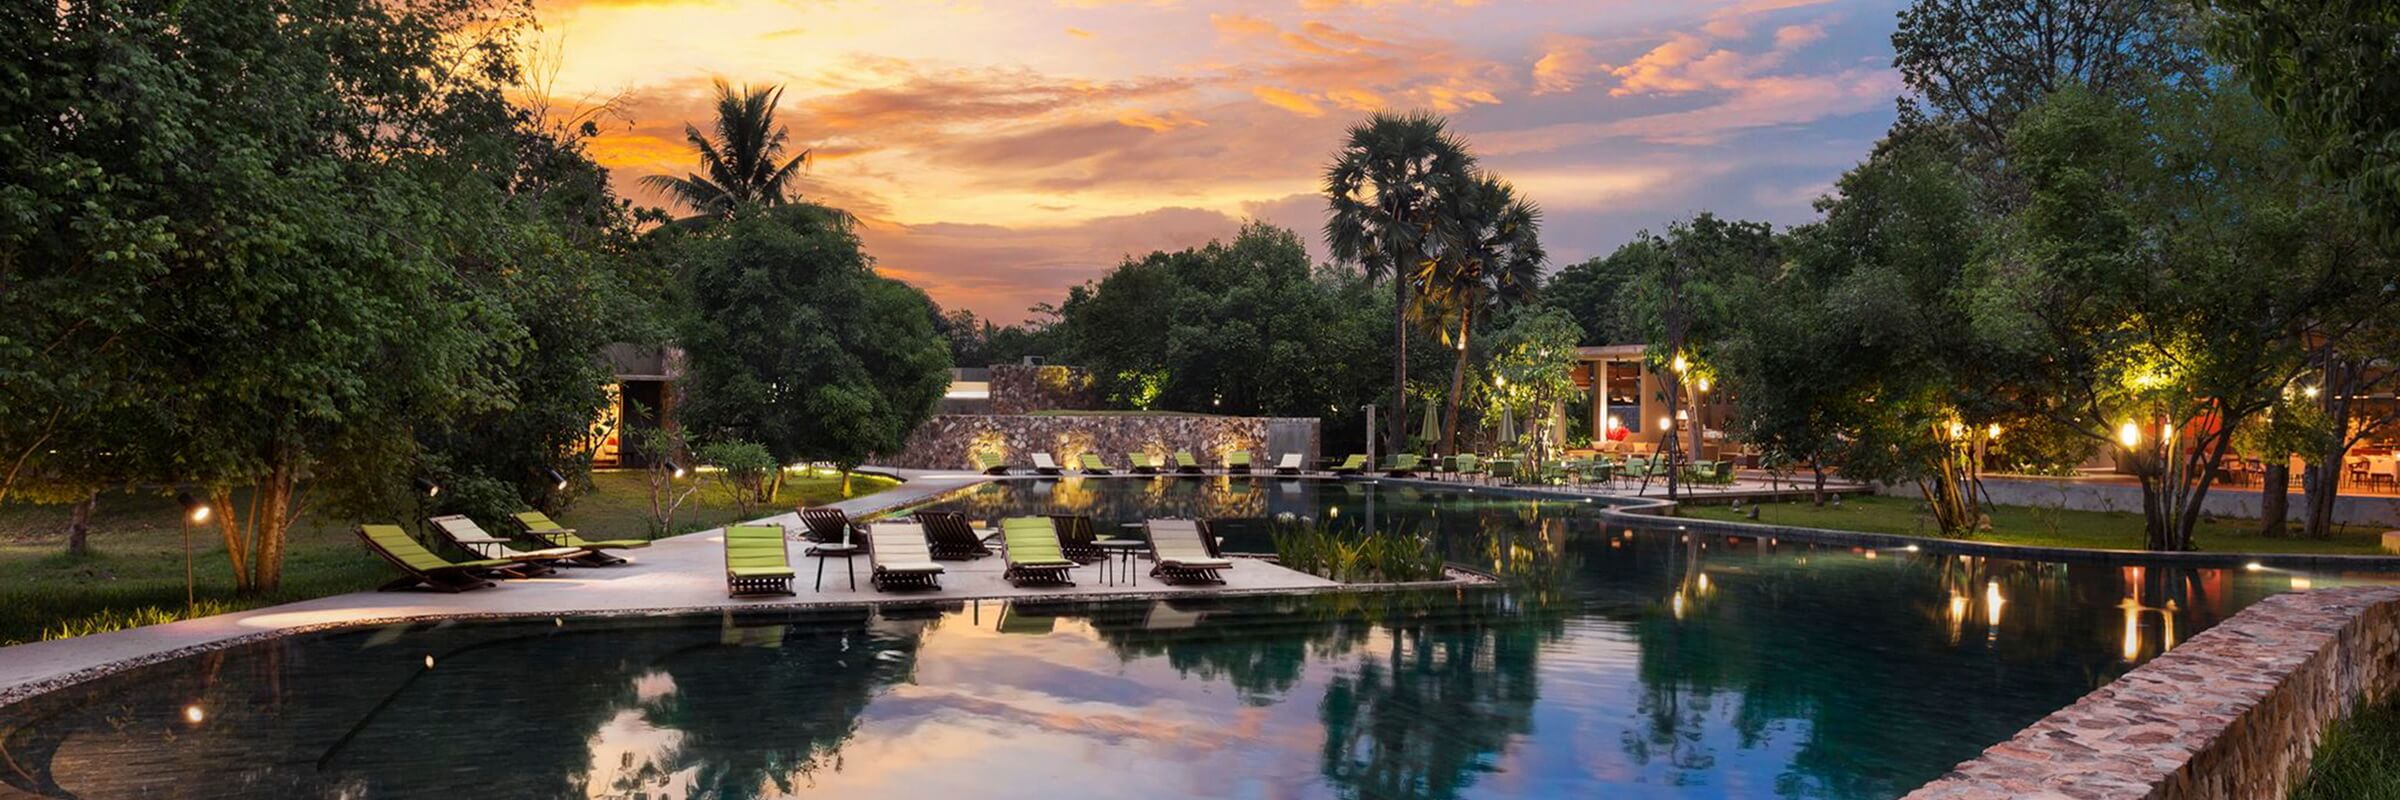 Der Pool- und Gartenbereich mit Terrassenlandschaft des Templation Angkor Hotel in Siem Reap, Kambodscha